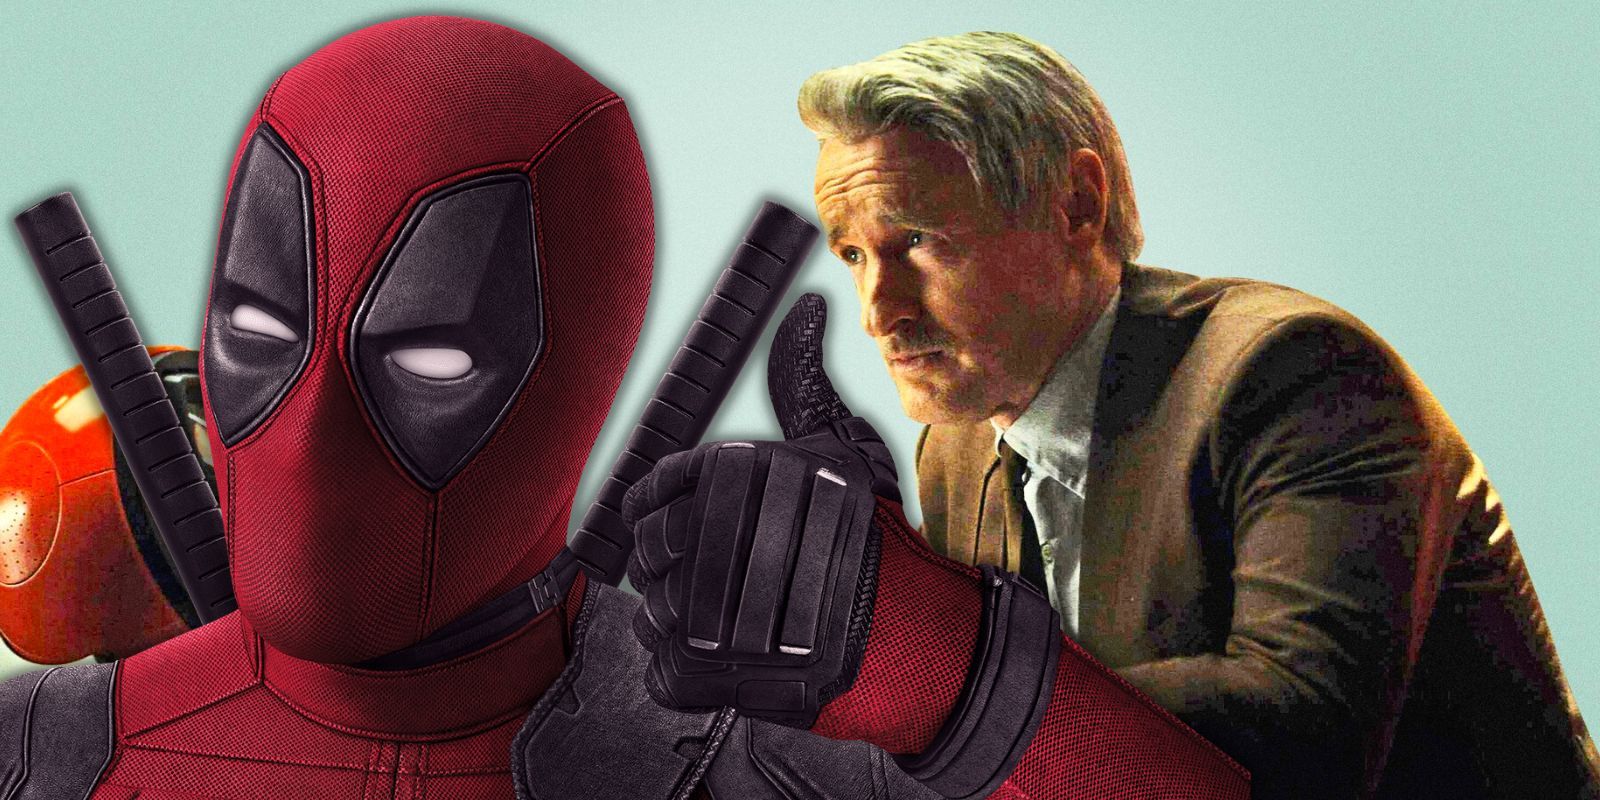 Owen Wilson's Major Role In Deadpool 3 Revealed by New Rumor